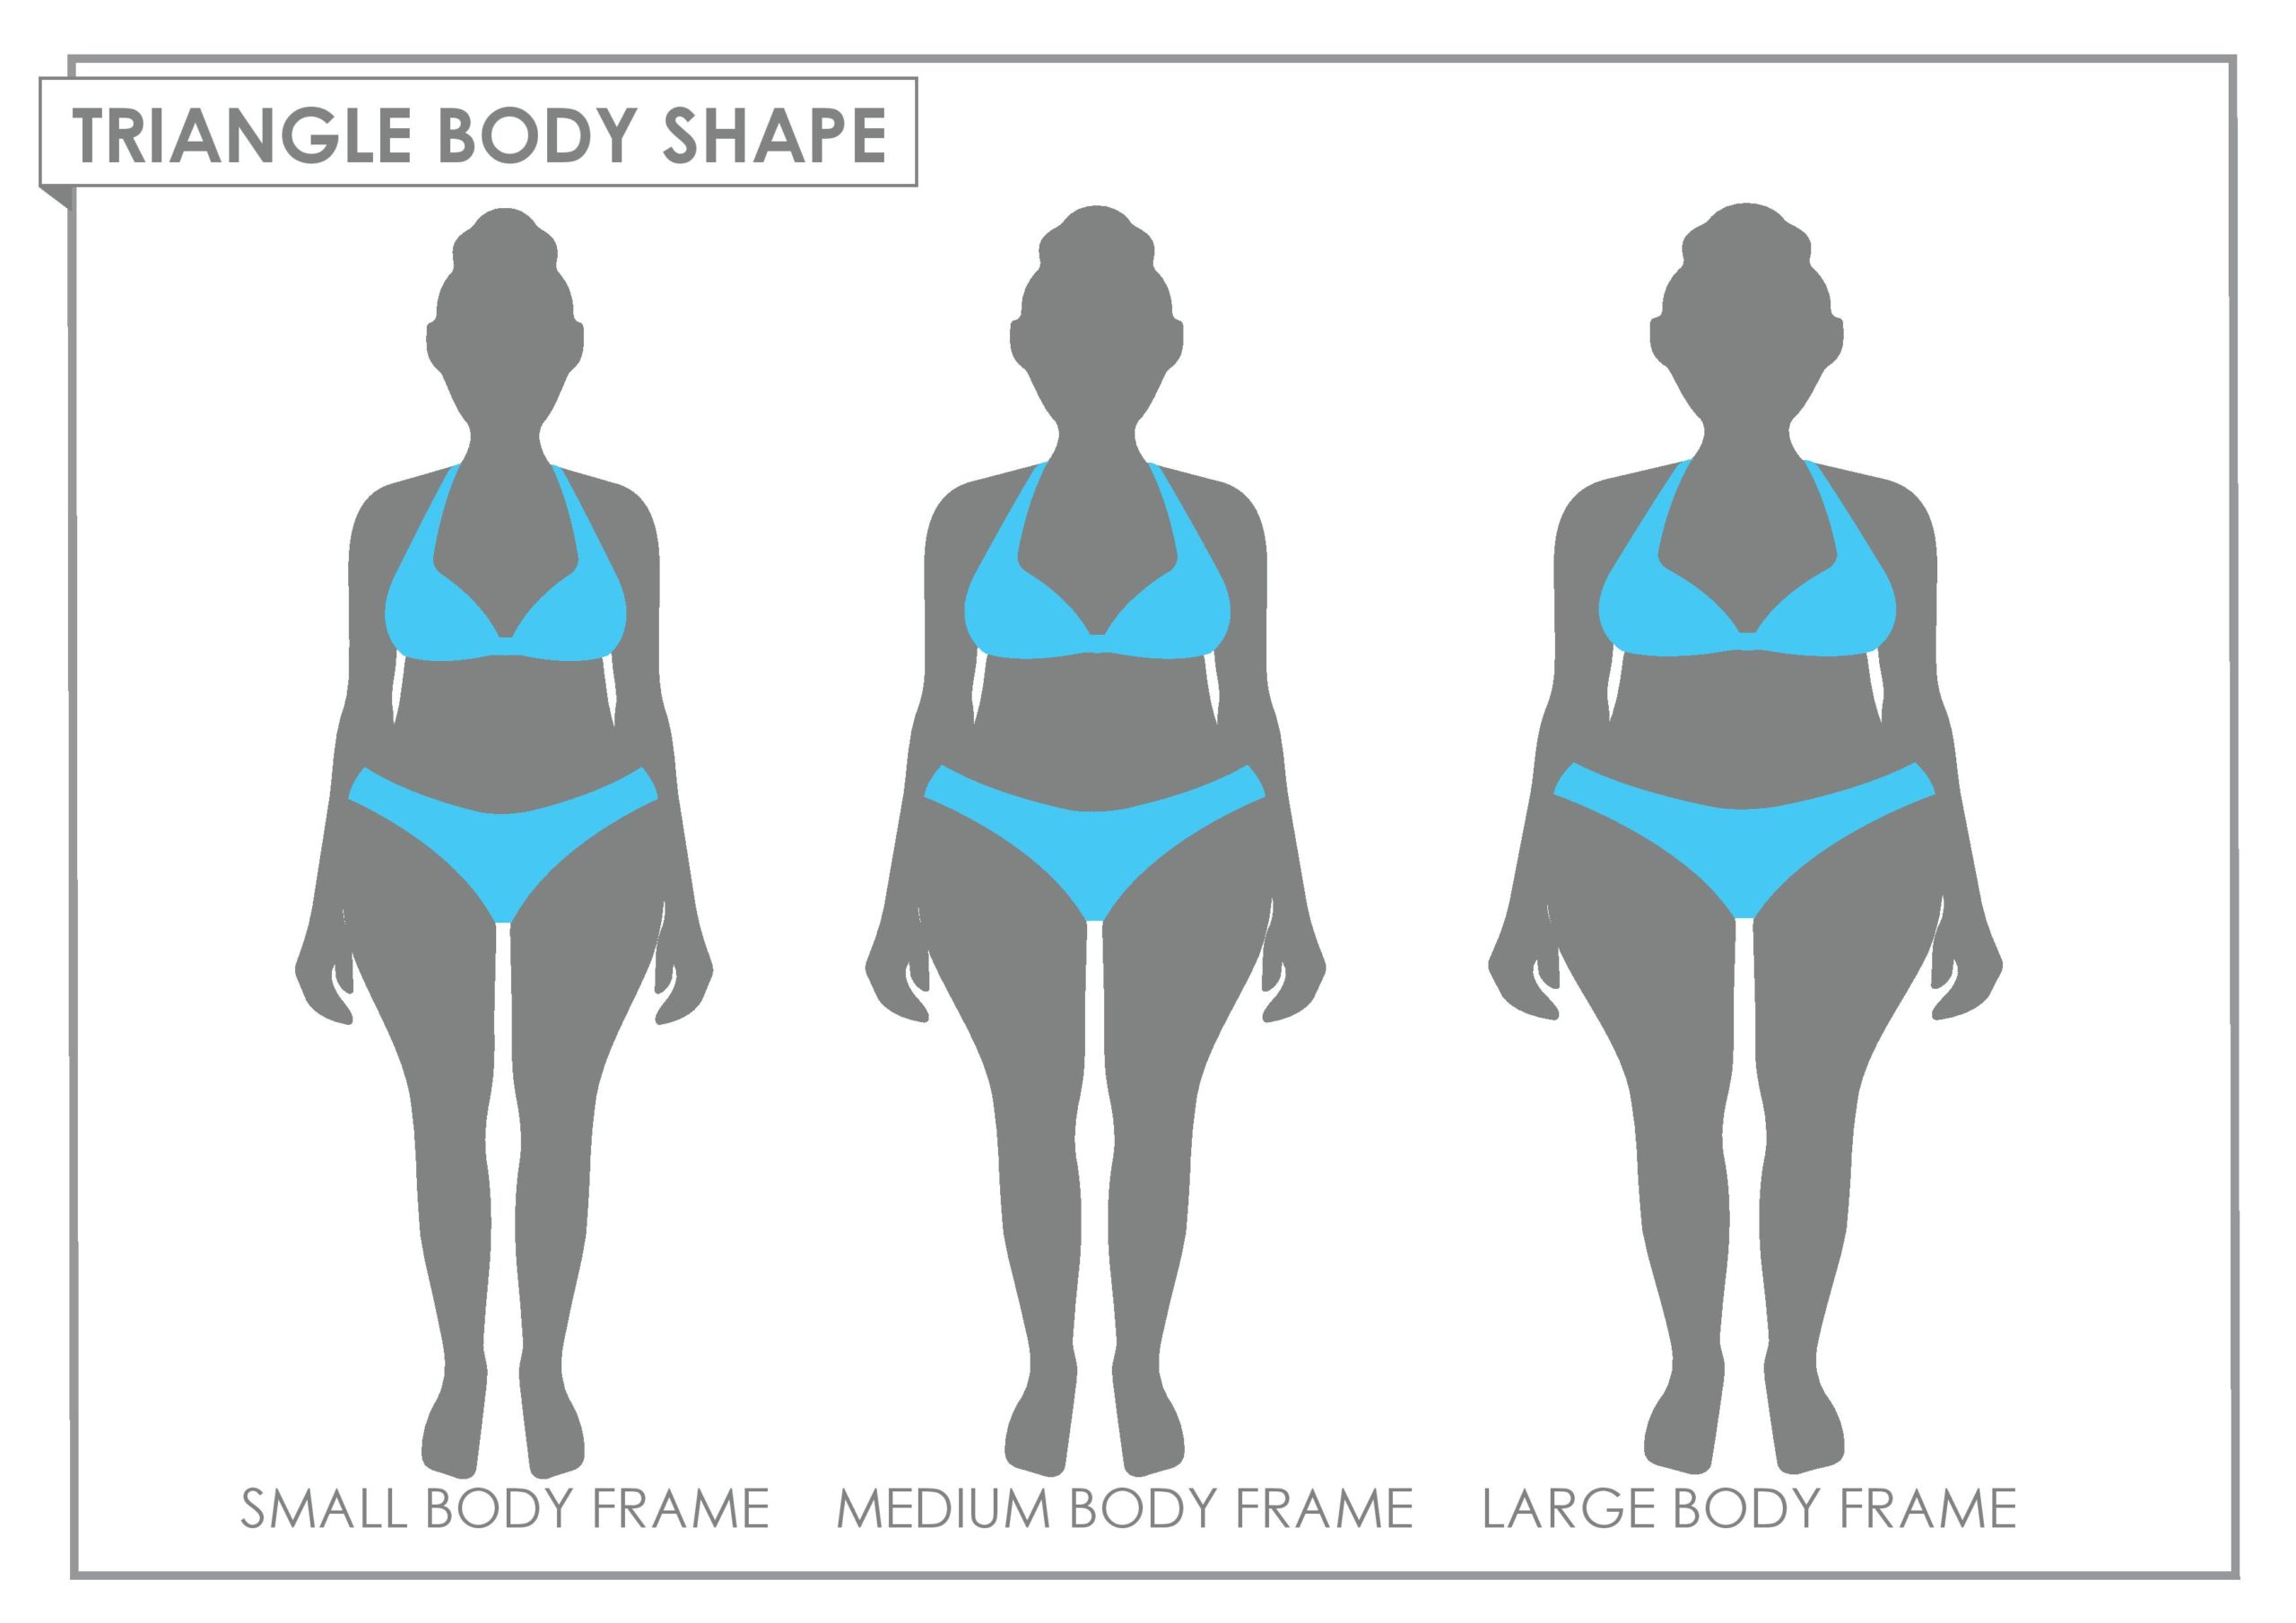 Triangular Body Shape - Jainee Gandhi